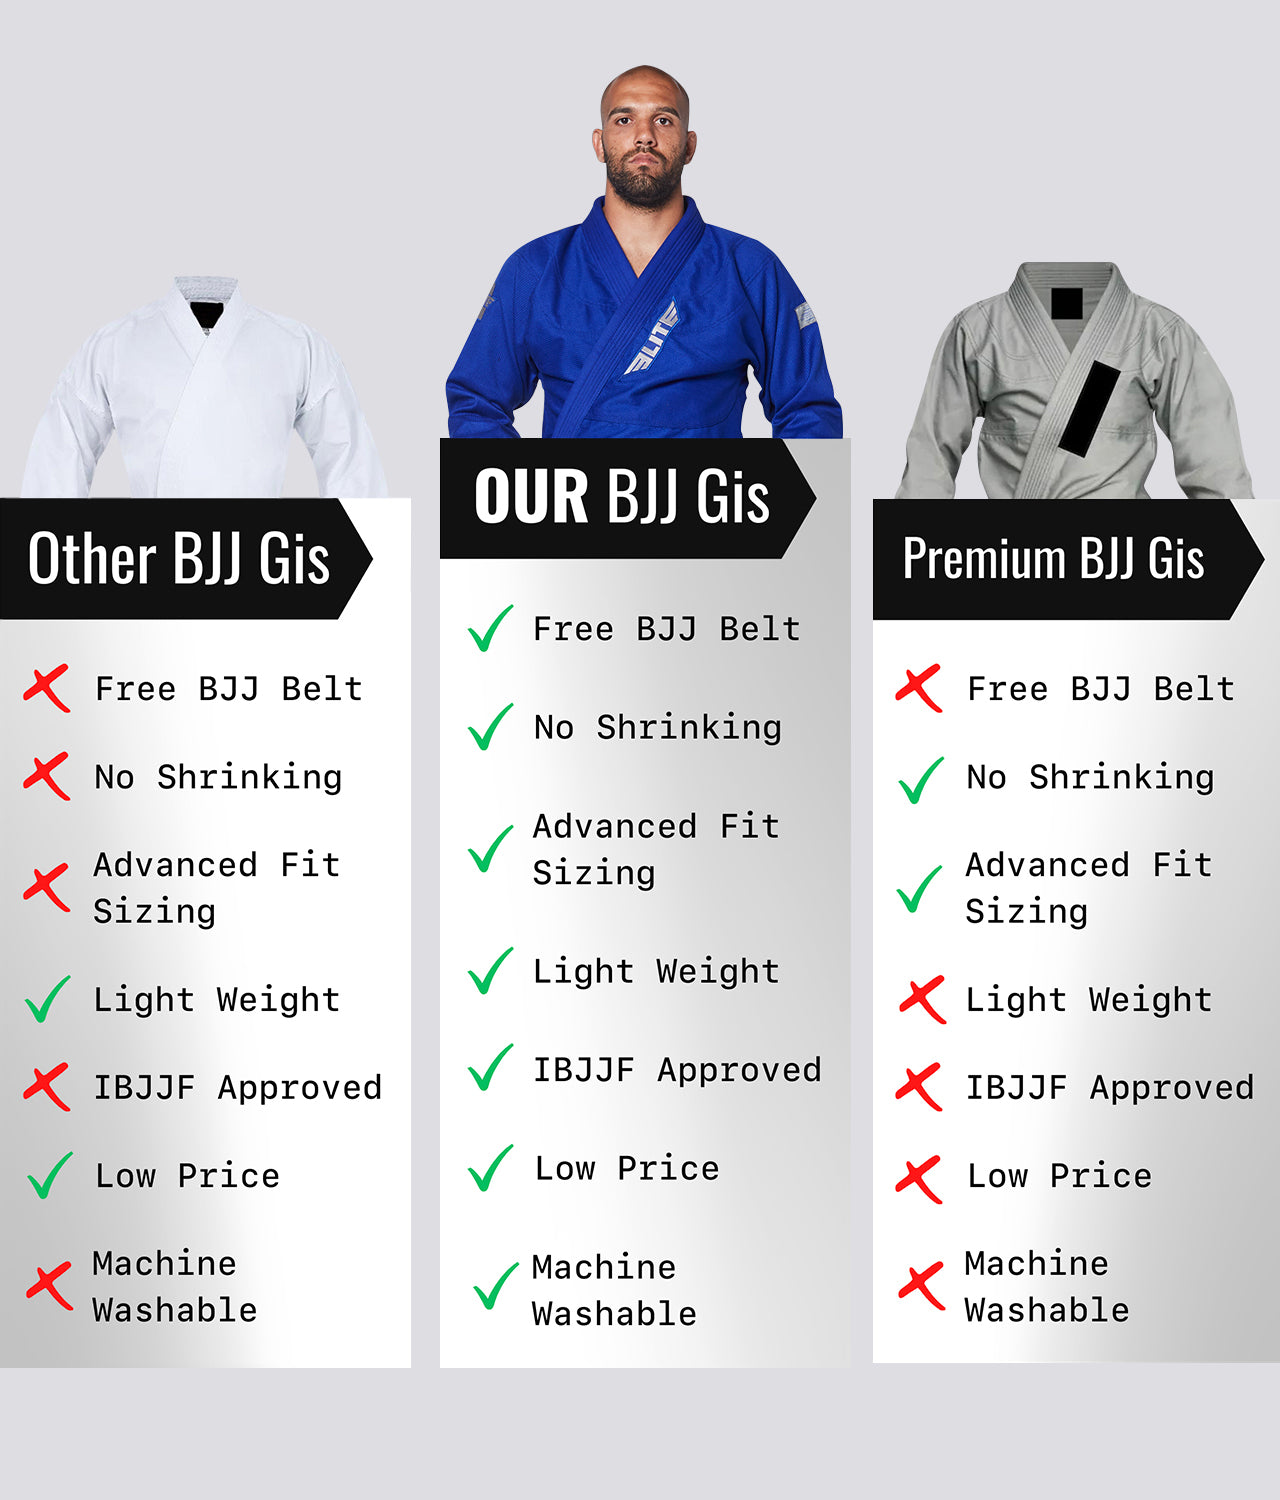 Elite Sports Men's Core Blue Brazilian Jiu Jitsu BJJ Gi Comparison